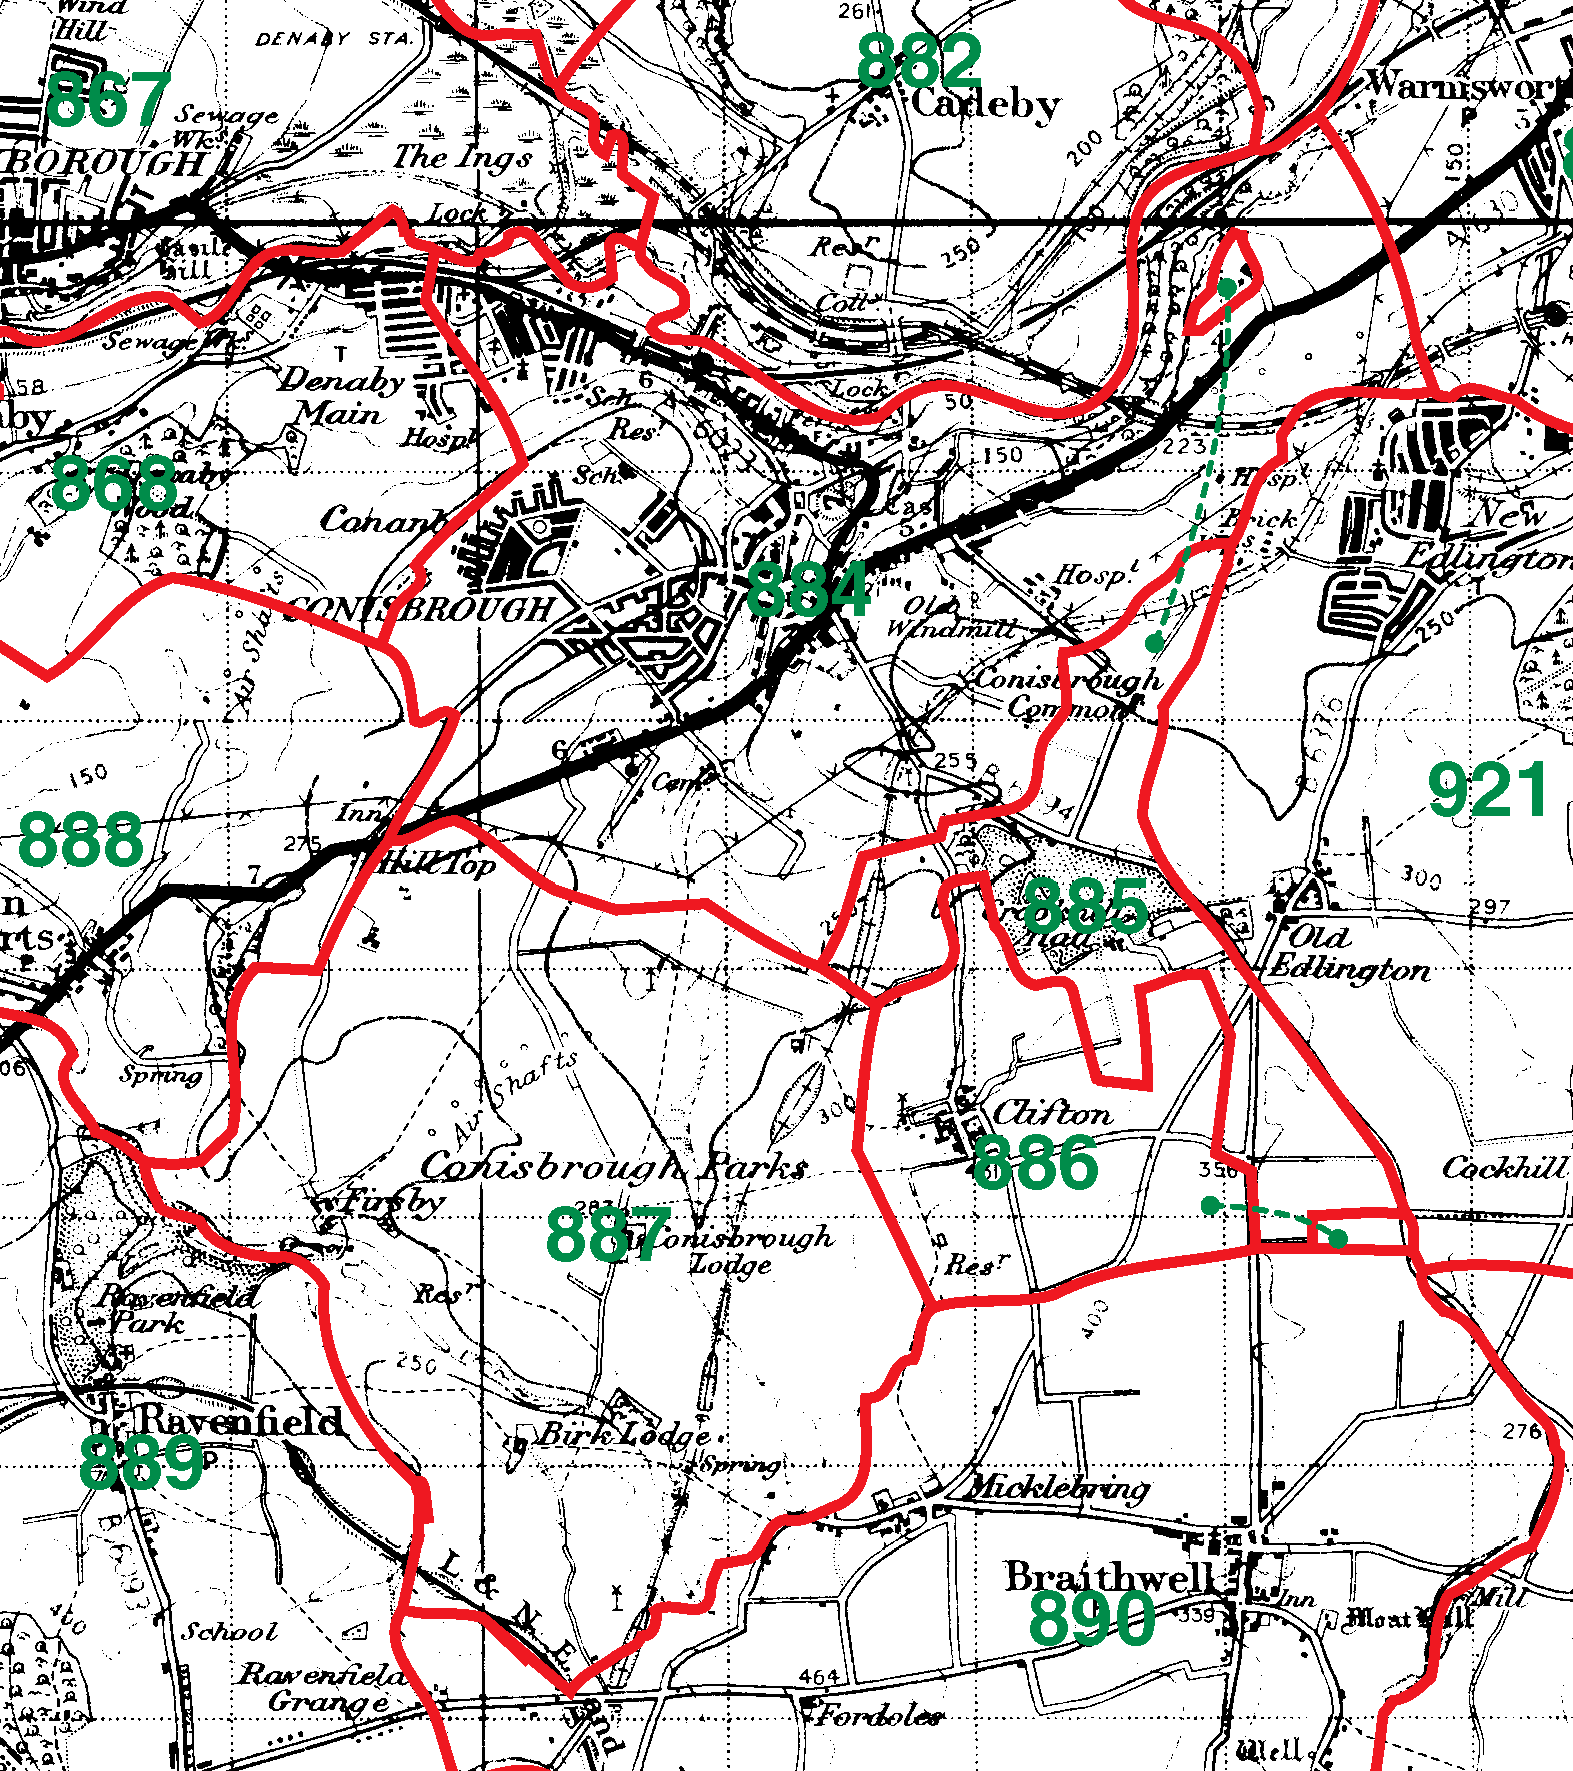 Conisbrough boundaries map